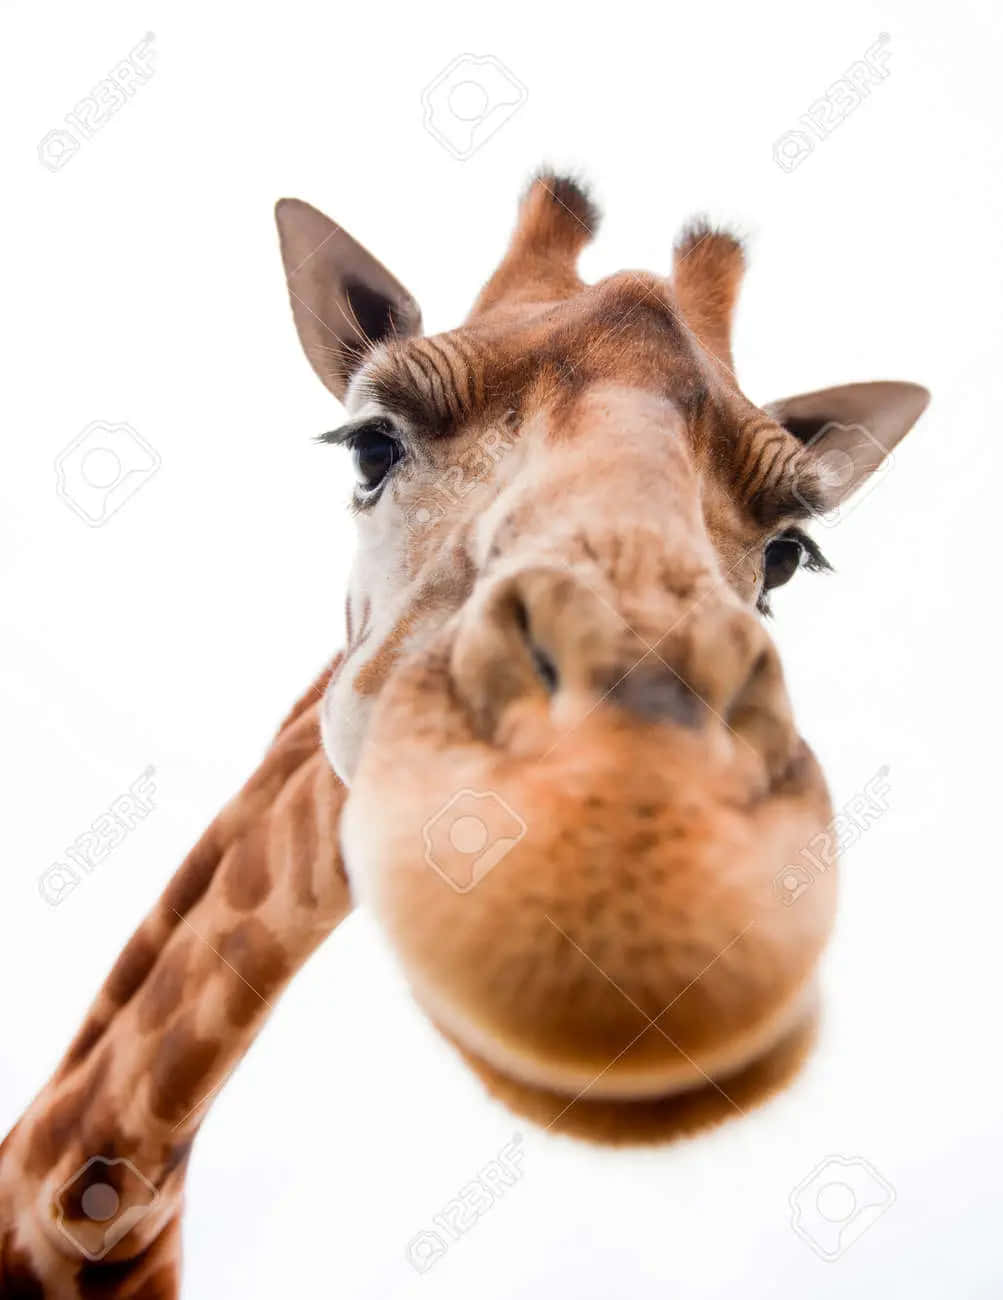 Et sjovt, smilende giraf, der leder efter en ven!